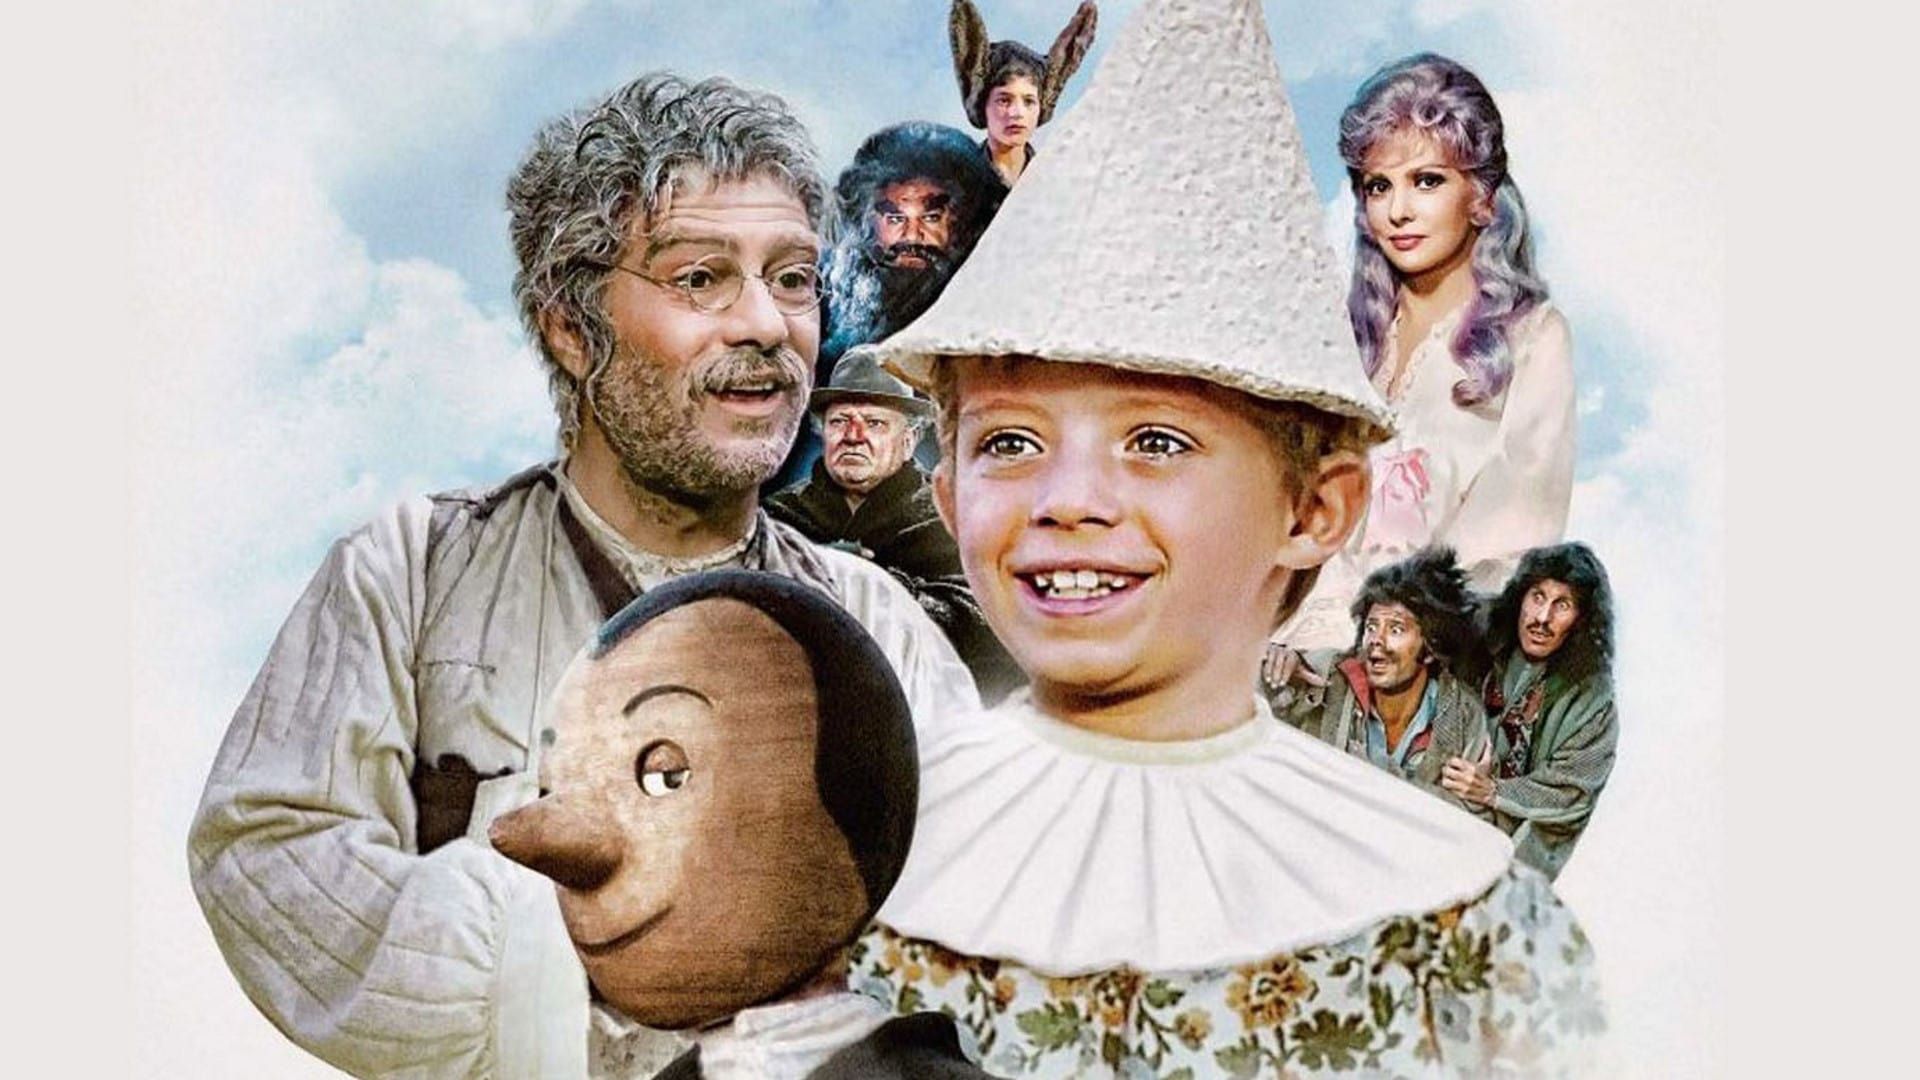 Le avventure di Pinocchio background